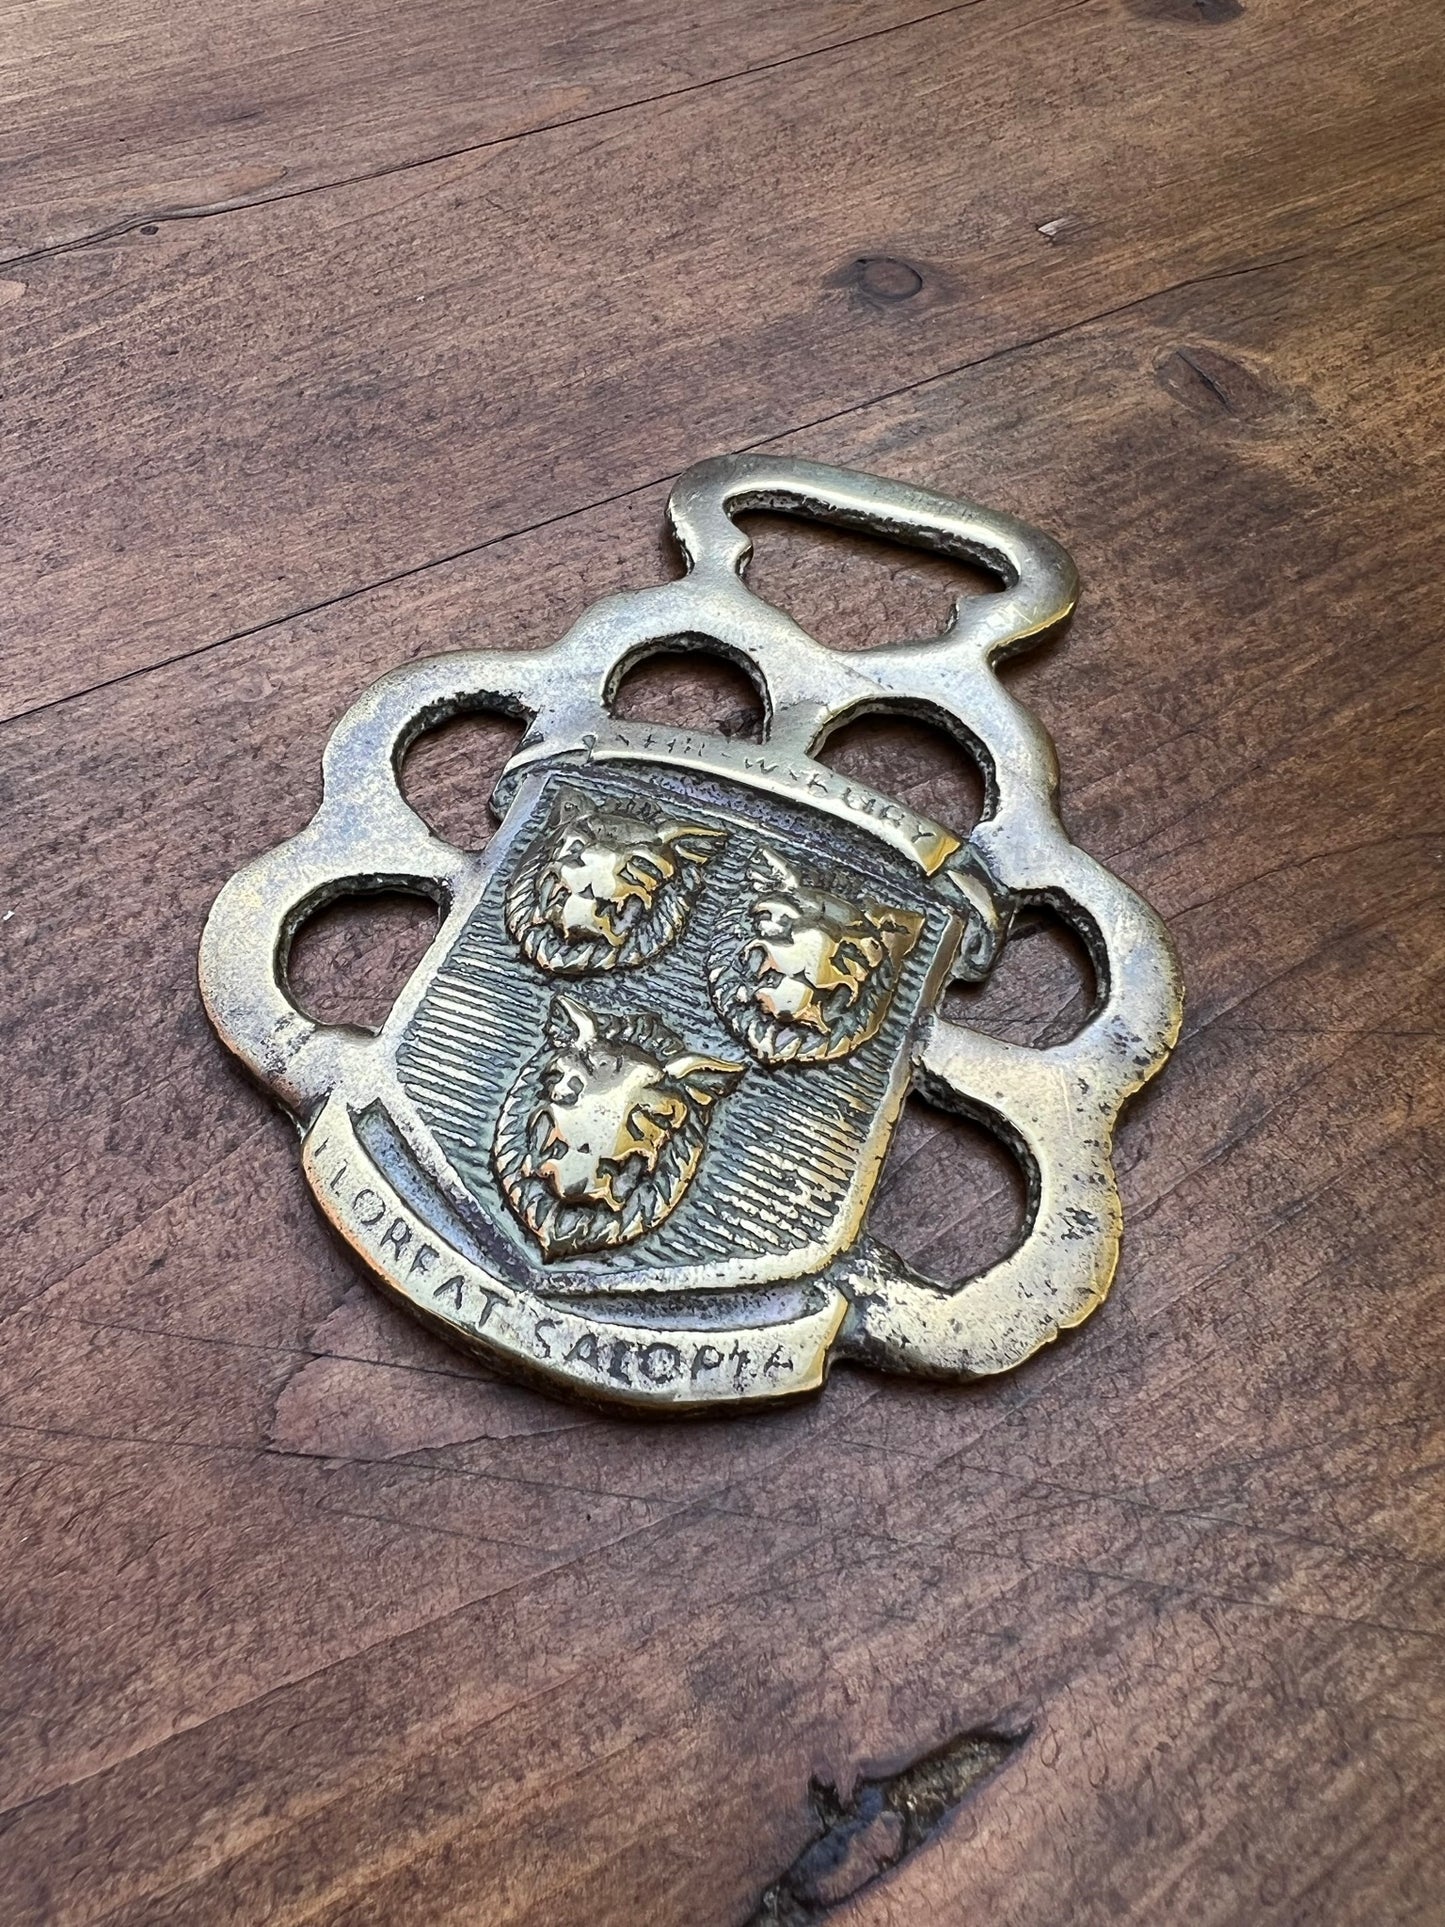 Horse Brass Shrewsbury Floreat Salopia Coat of Arms